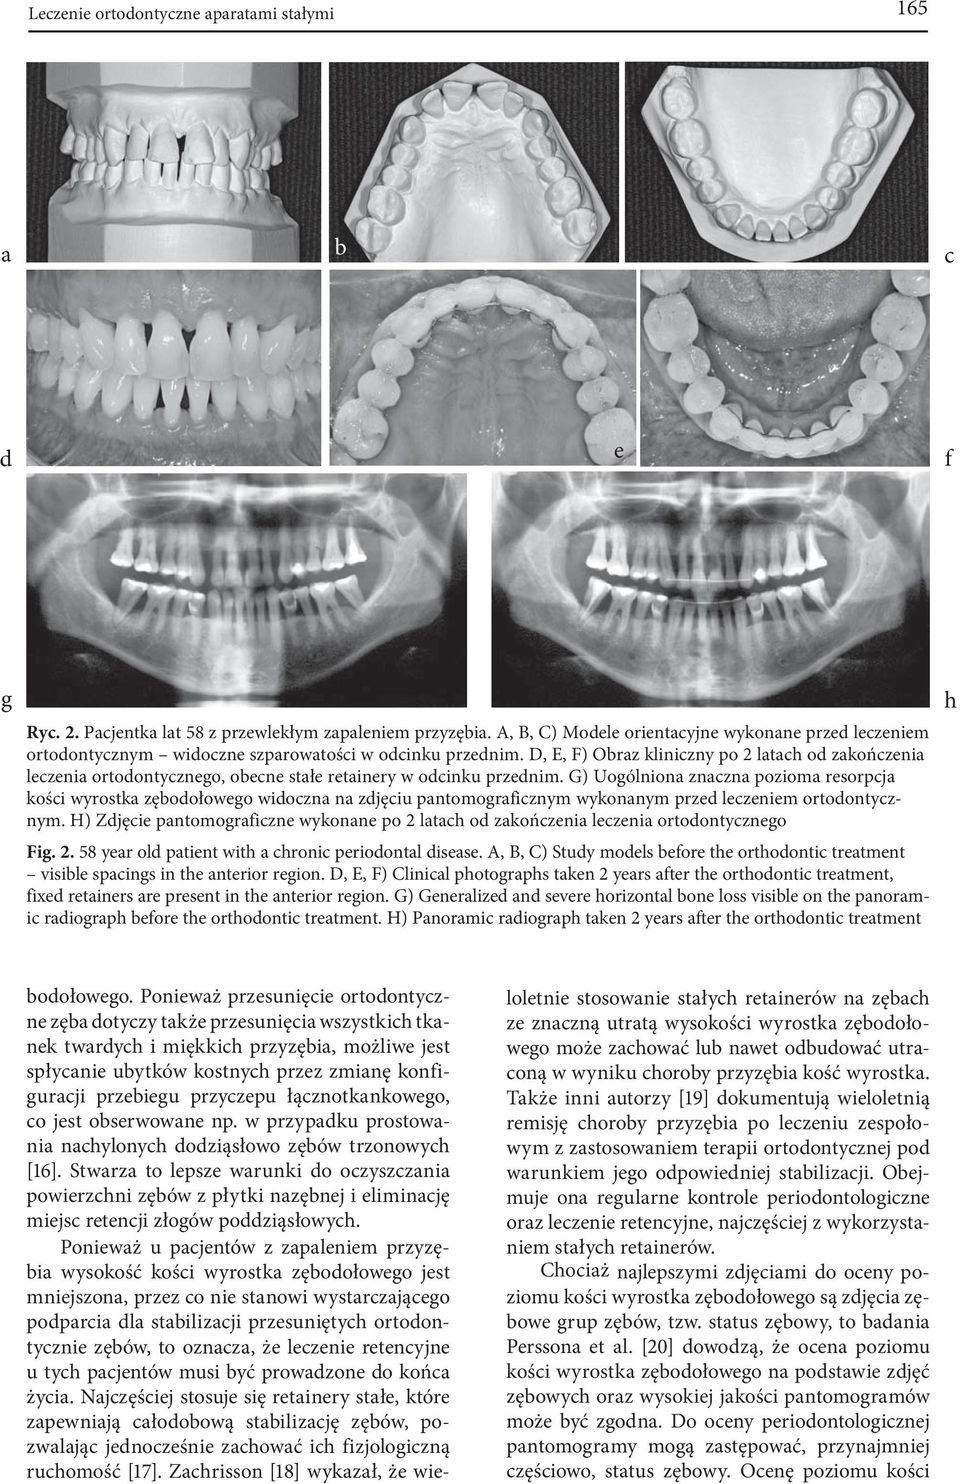 D, E, F) Obraz kliniczny po 2 latach od zakończenia leczenia ortodontycznego, obecne stałe retainery w odcinku przednim.